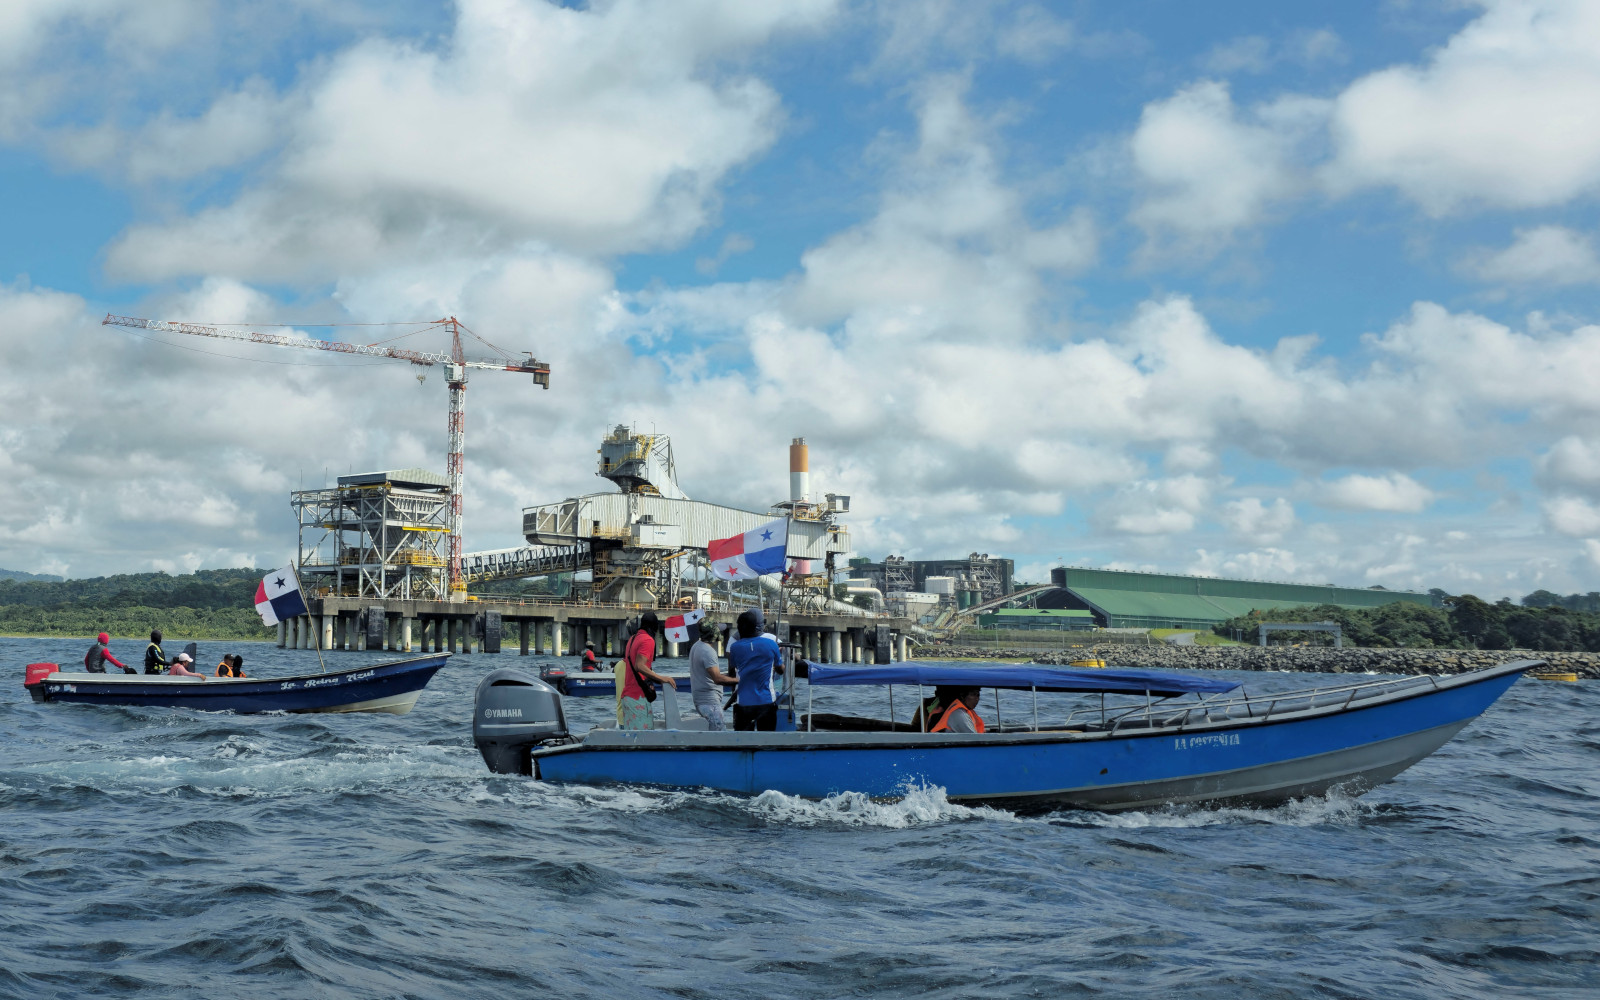 Рыболовецкие суда блокируют вход в ключевой порт Пунта-Ринкон в&nbsp;Панаме, требуя аннулирования контракта канадской компании First Quantum Minerals